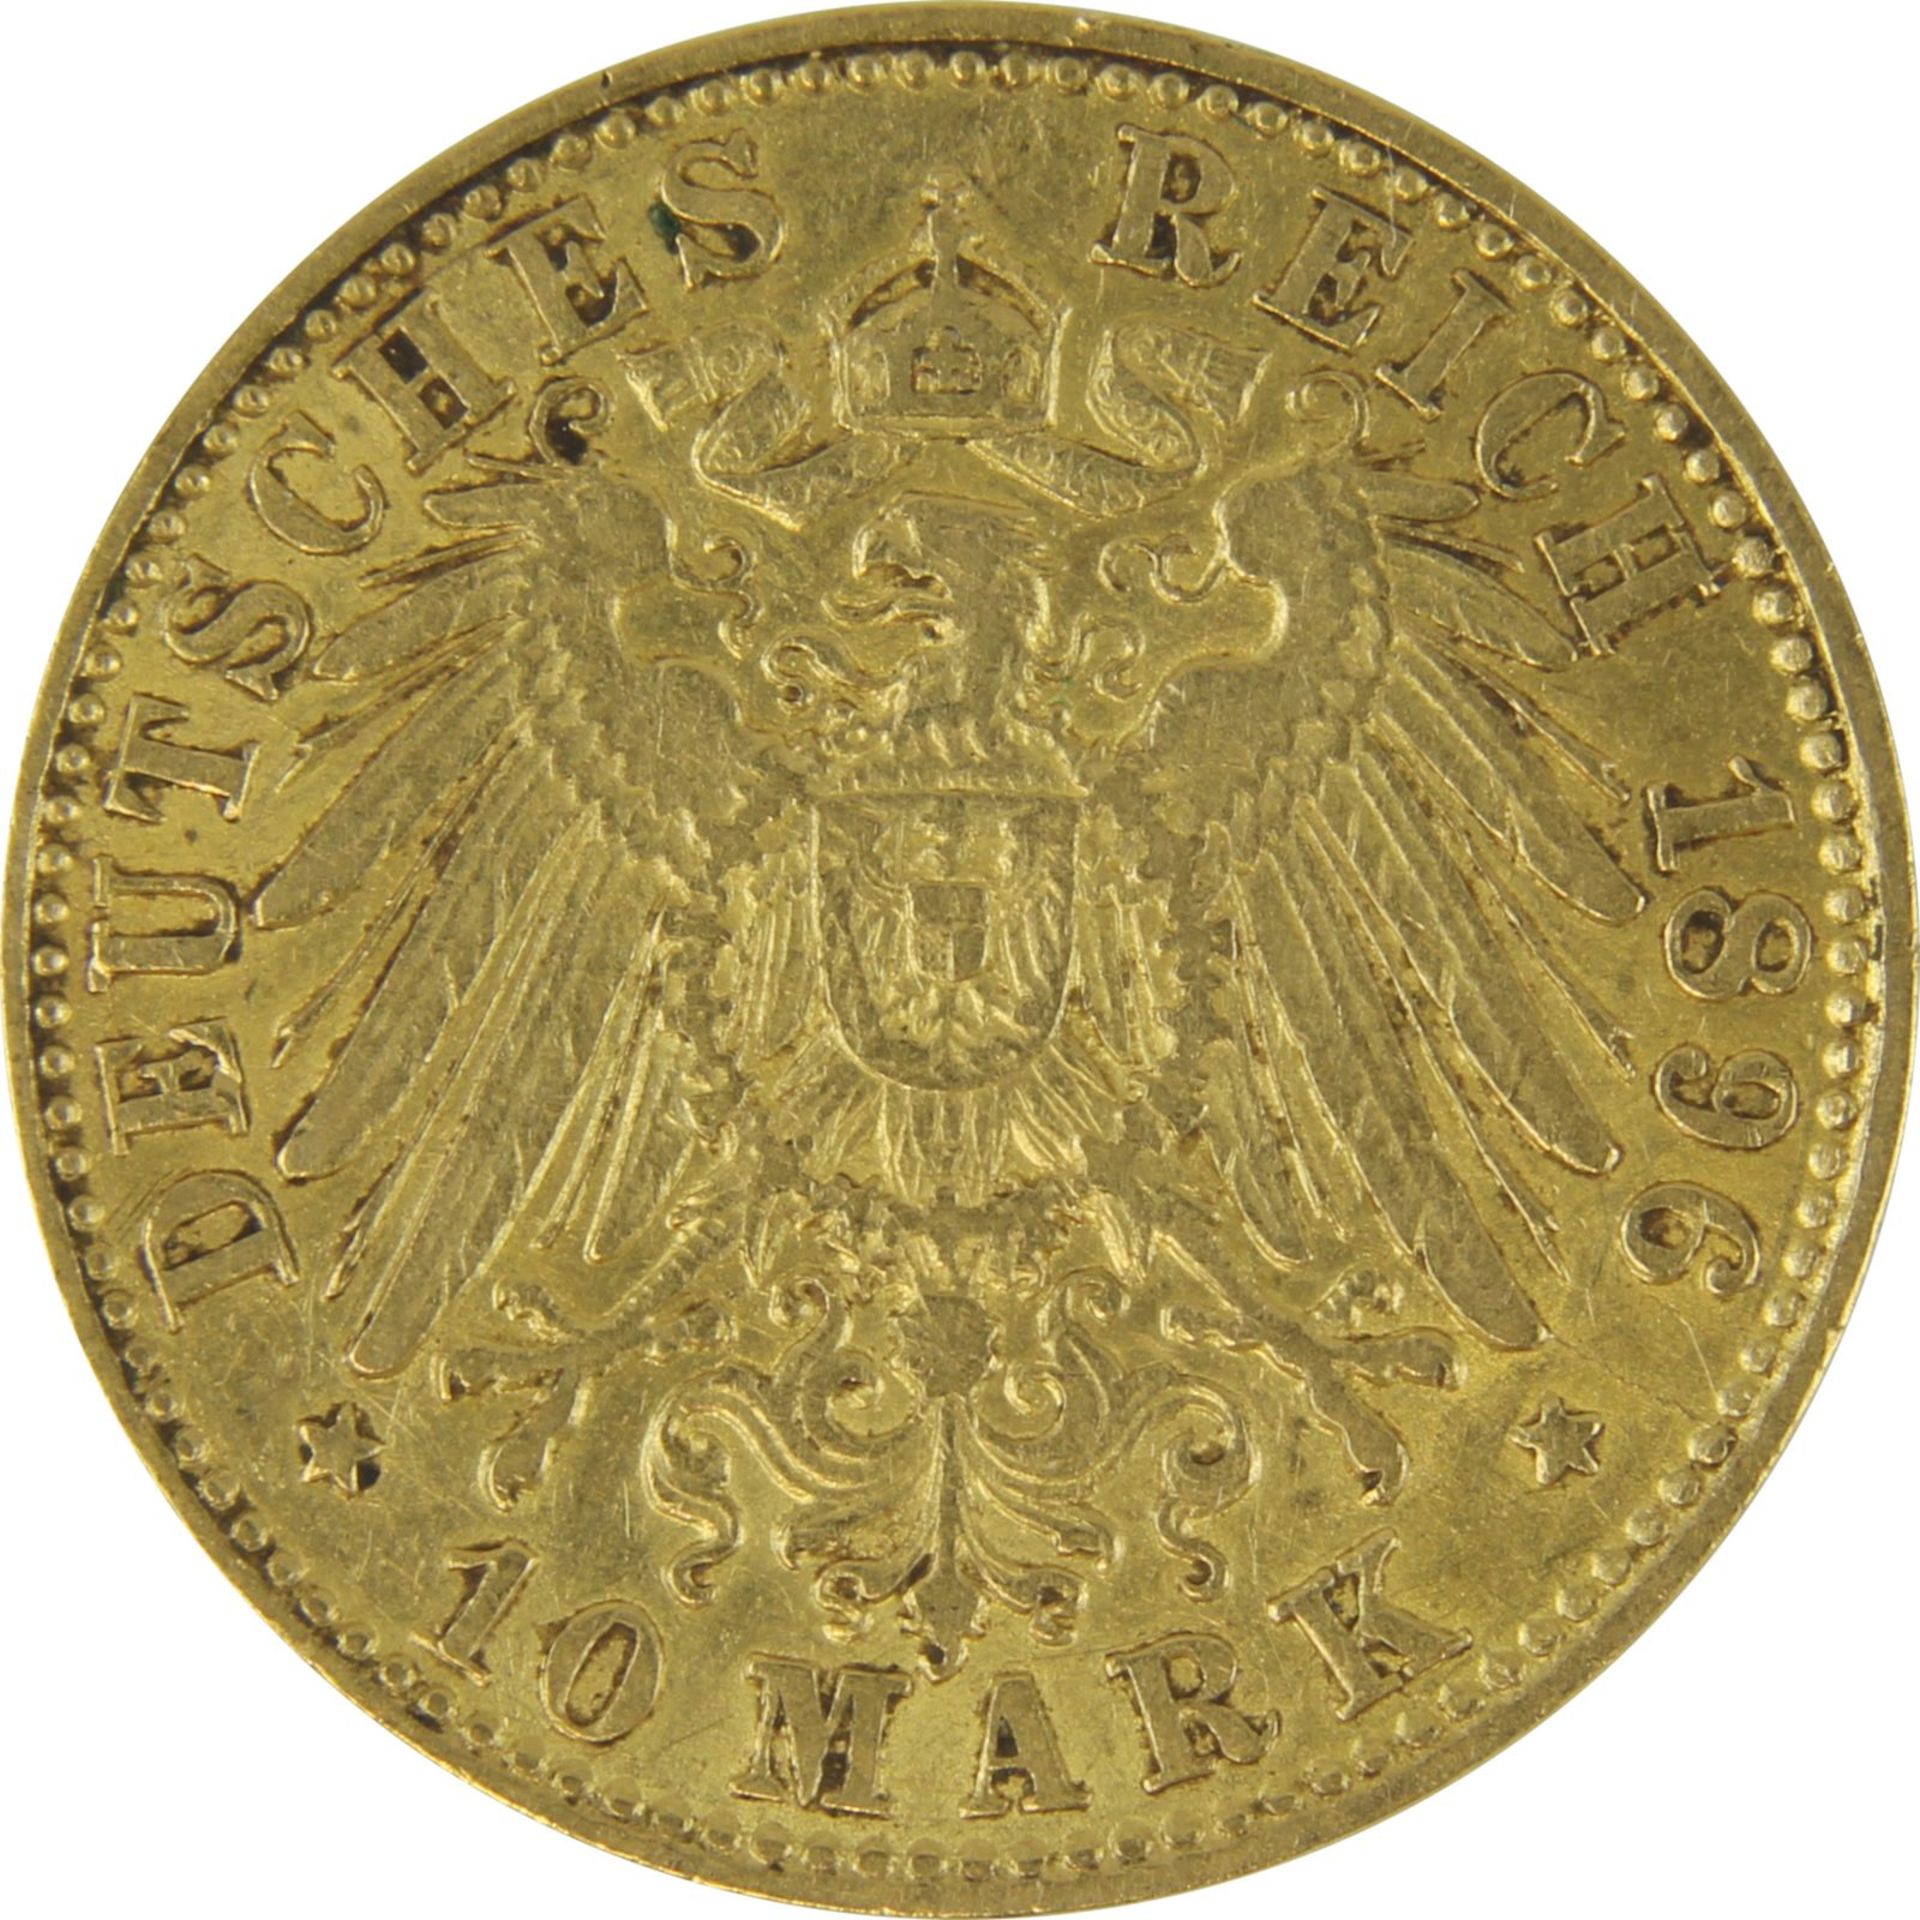 Goldmünze zu 10 Mark, Freie u. Hansestadt Hamburg - Deutsches Reich 1896, Avers: großes - Bild 3 aus 3